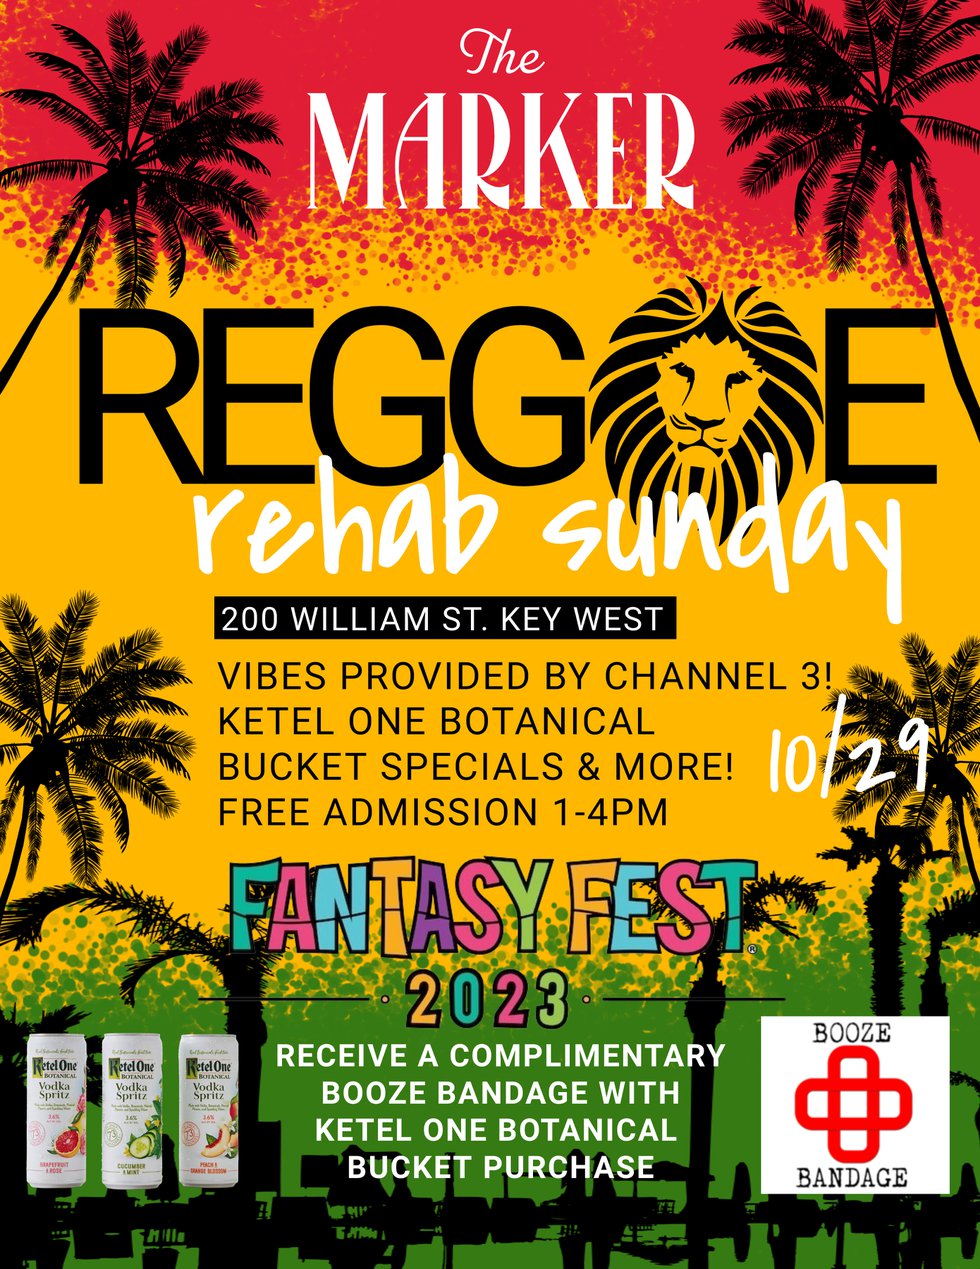 FF Reggae Rehab Sundays (1) (1).jpg